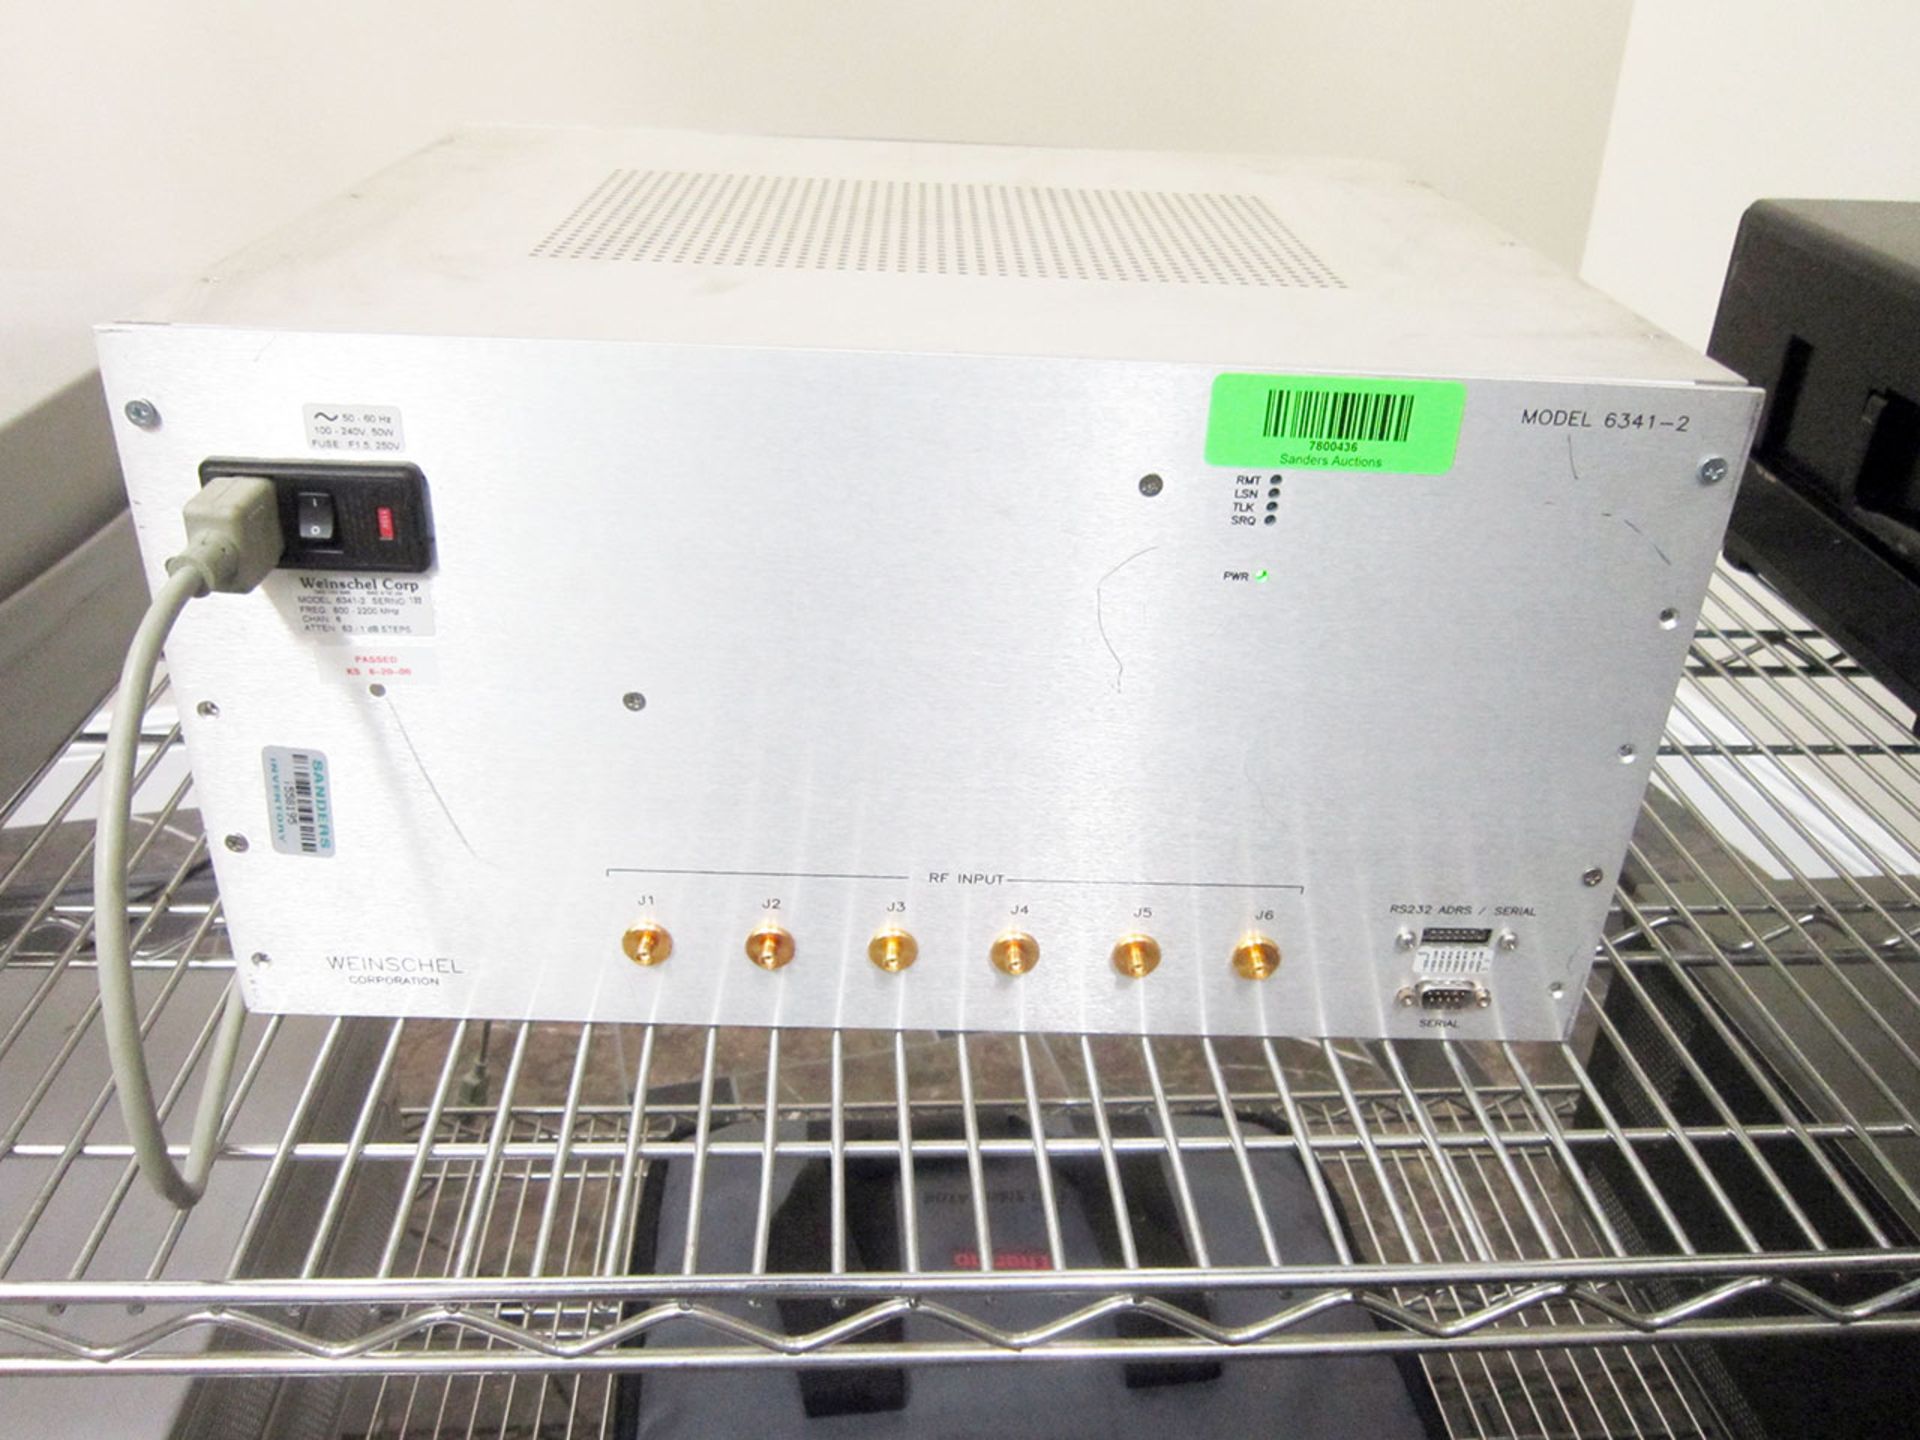 Weinschel Corporation 6341-2 2200 MHz Attenuator